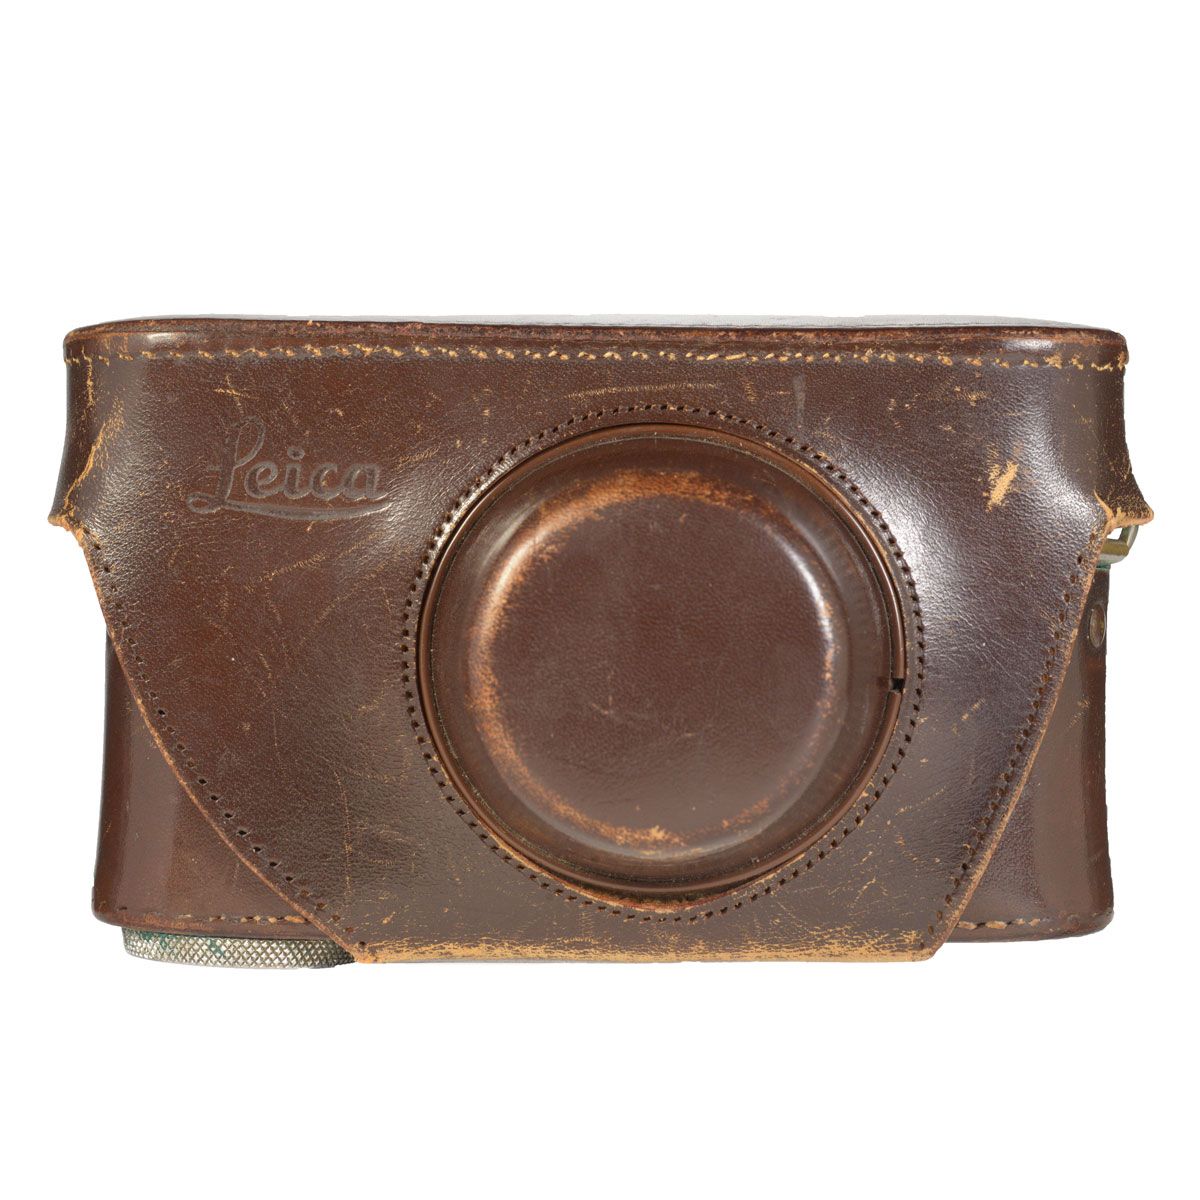 Чехол Leica Leather Case (для Leica III G) кожаный, цвет коричневый б/у